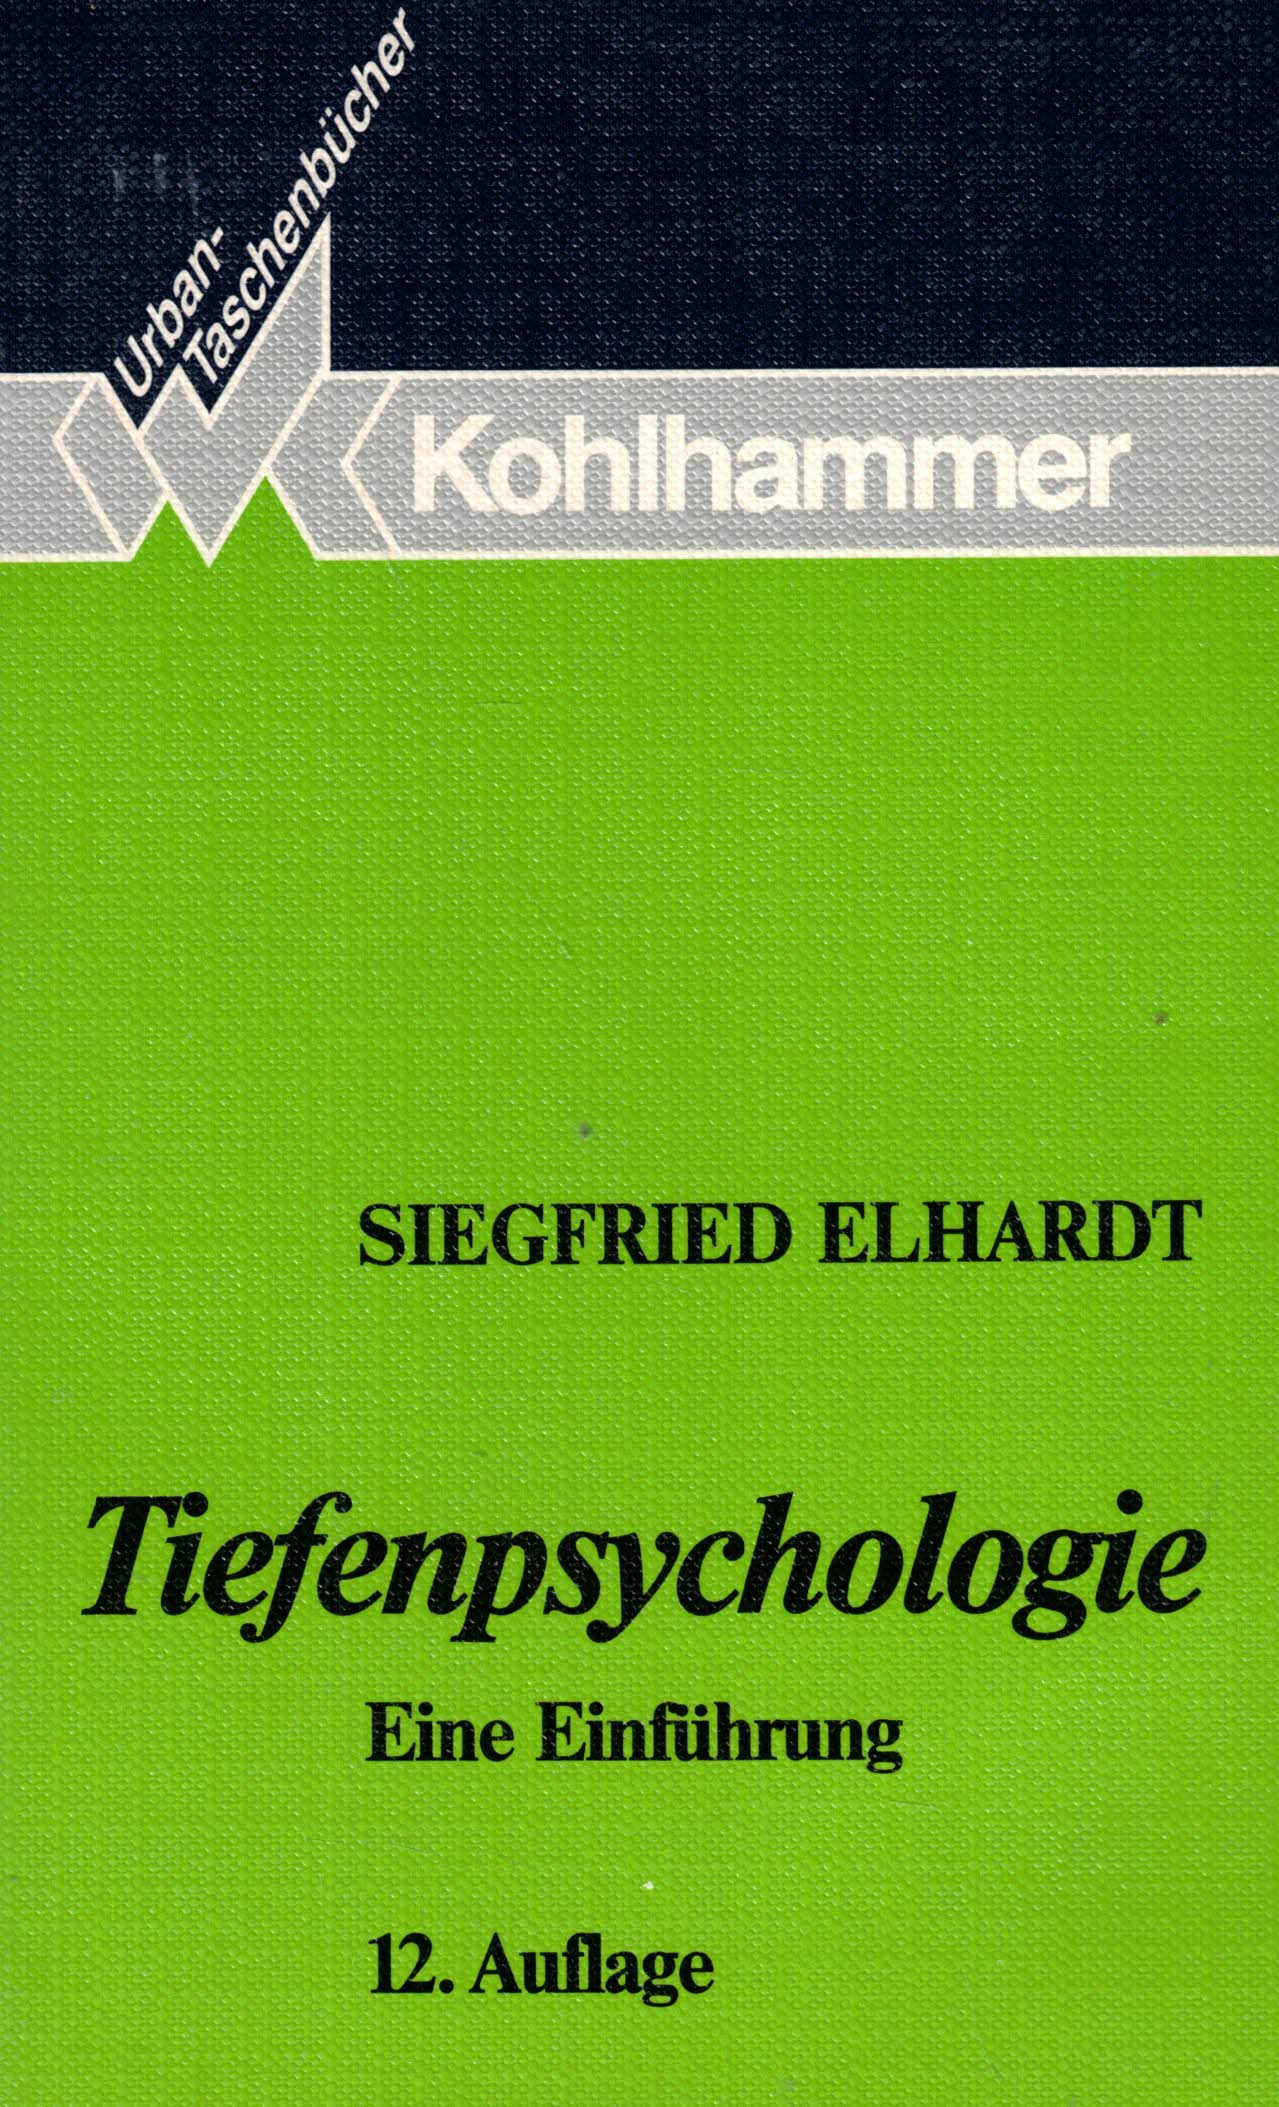 Tiefenpsychologie. Eine Einführung (12. Auflage) - Elhardt, Siegfried